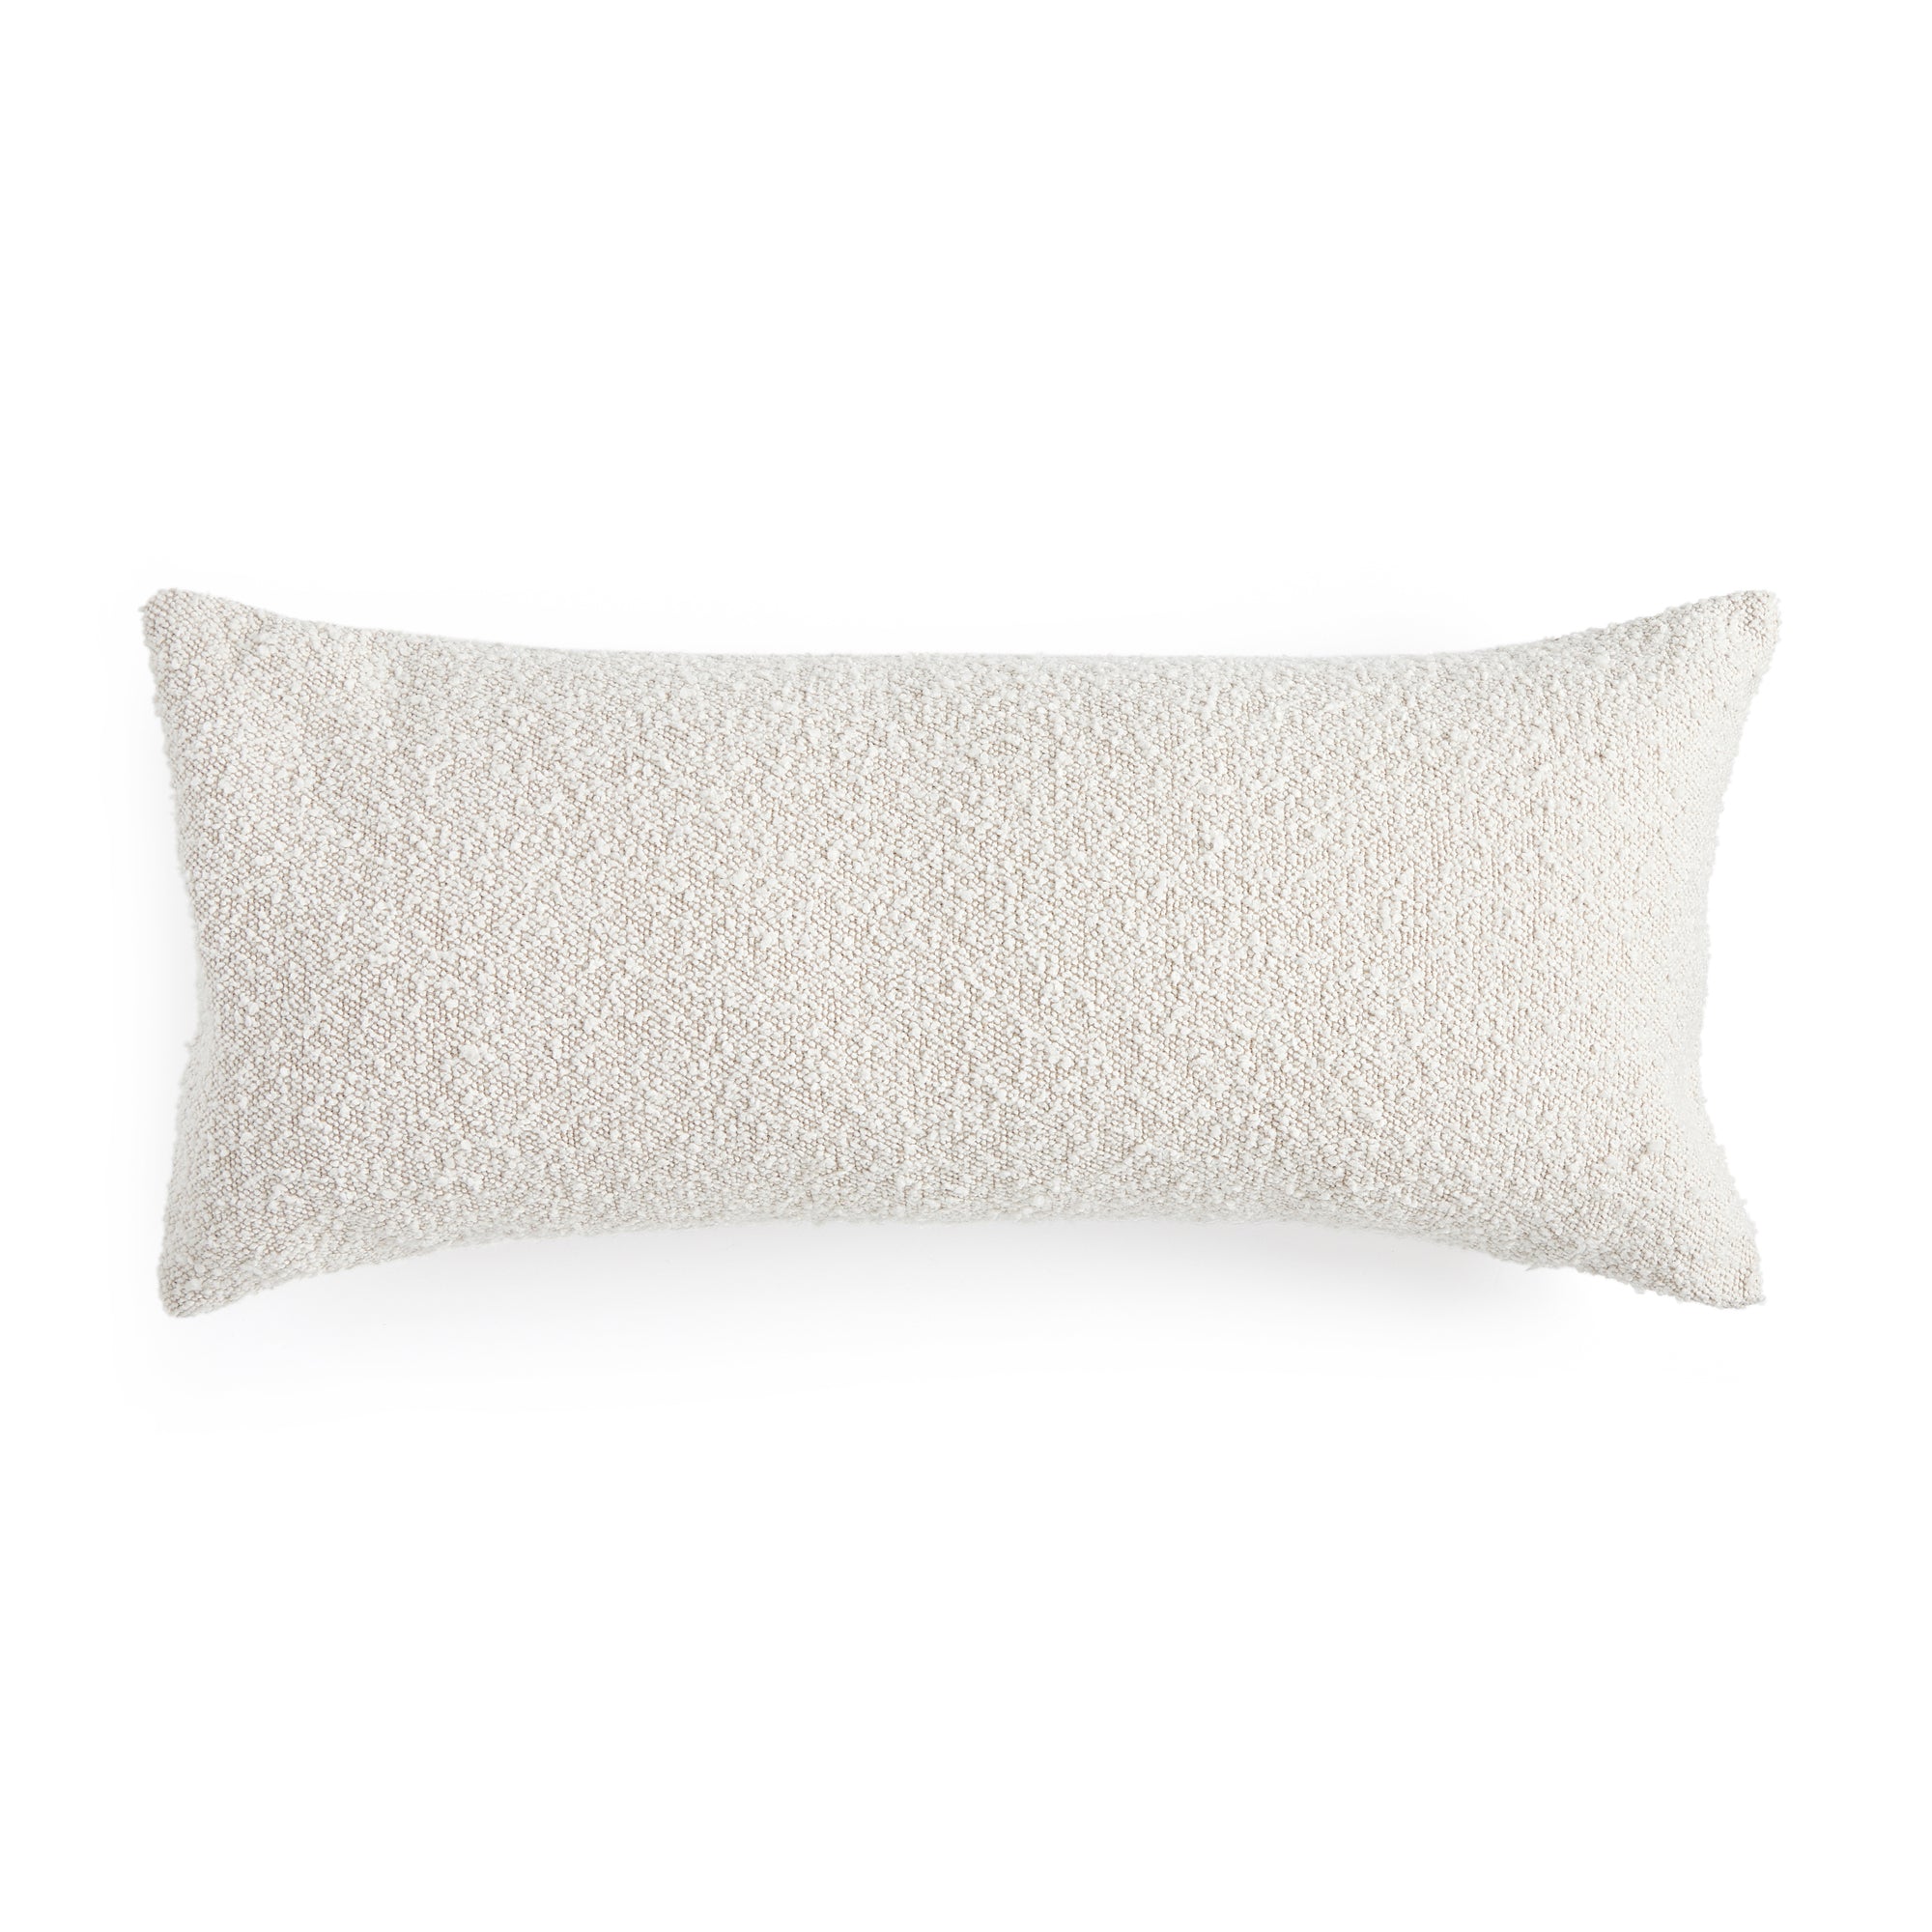 Verona Pillow